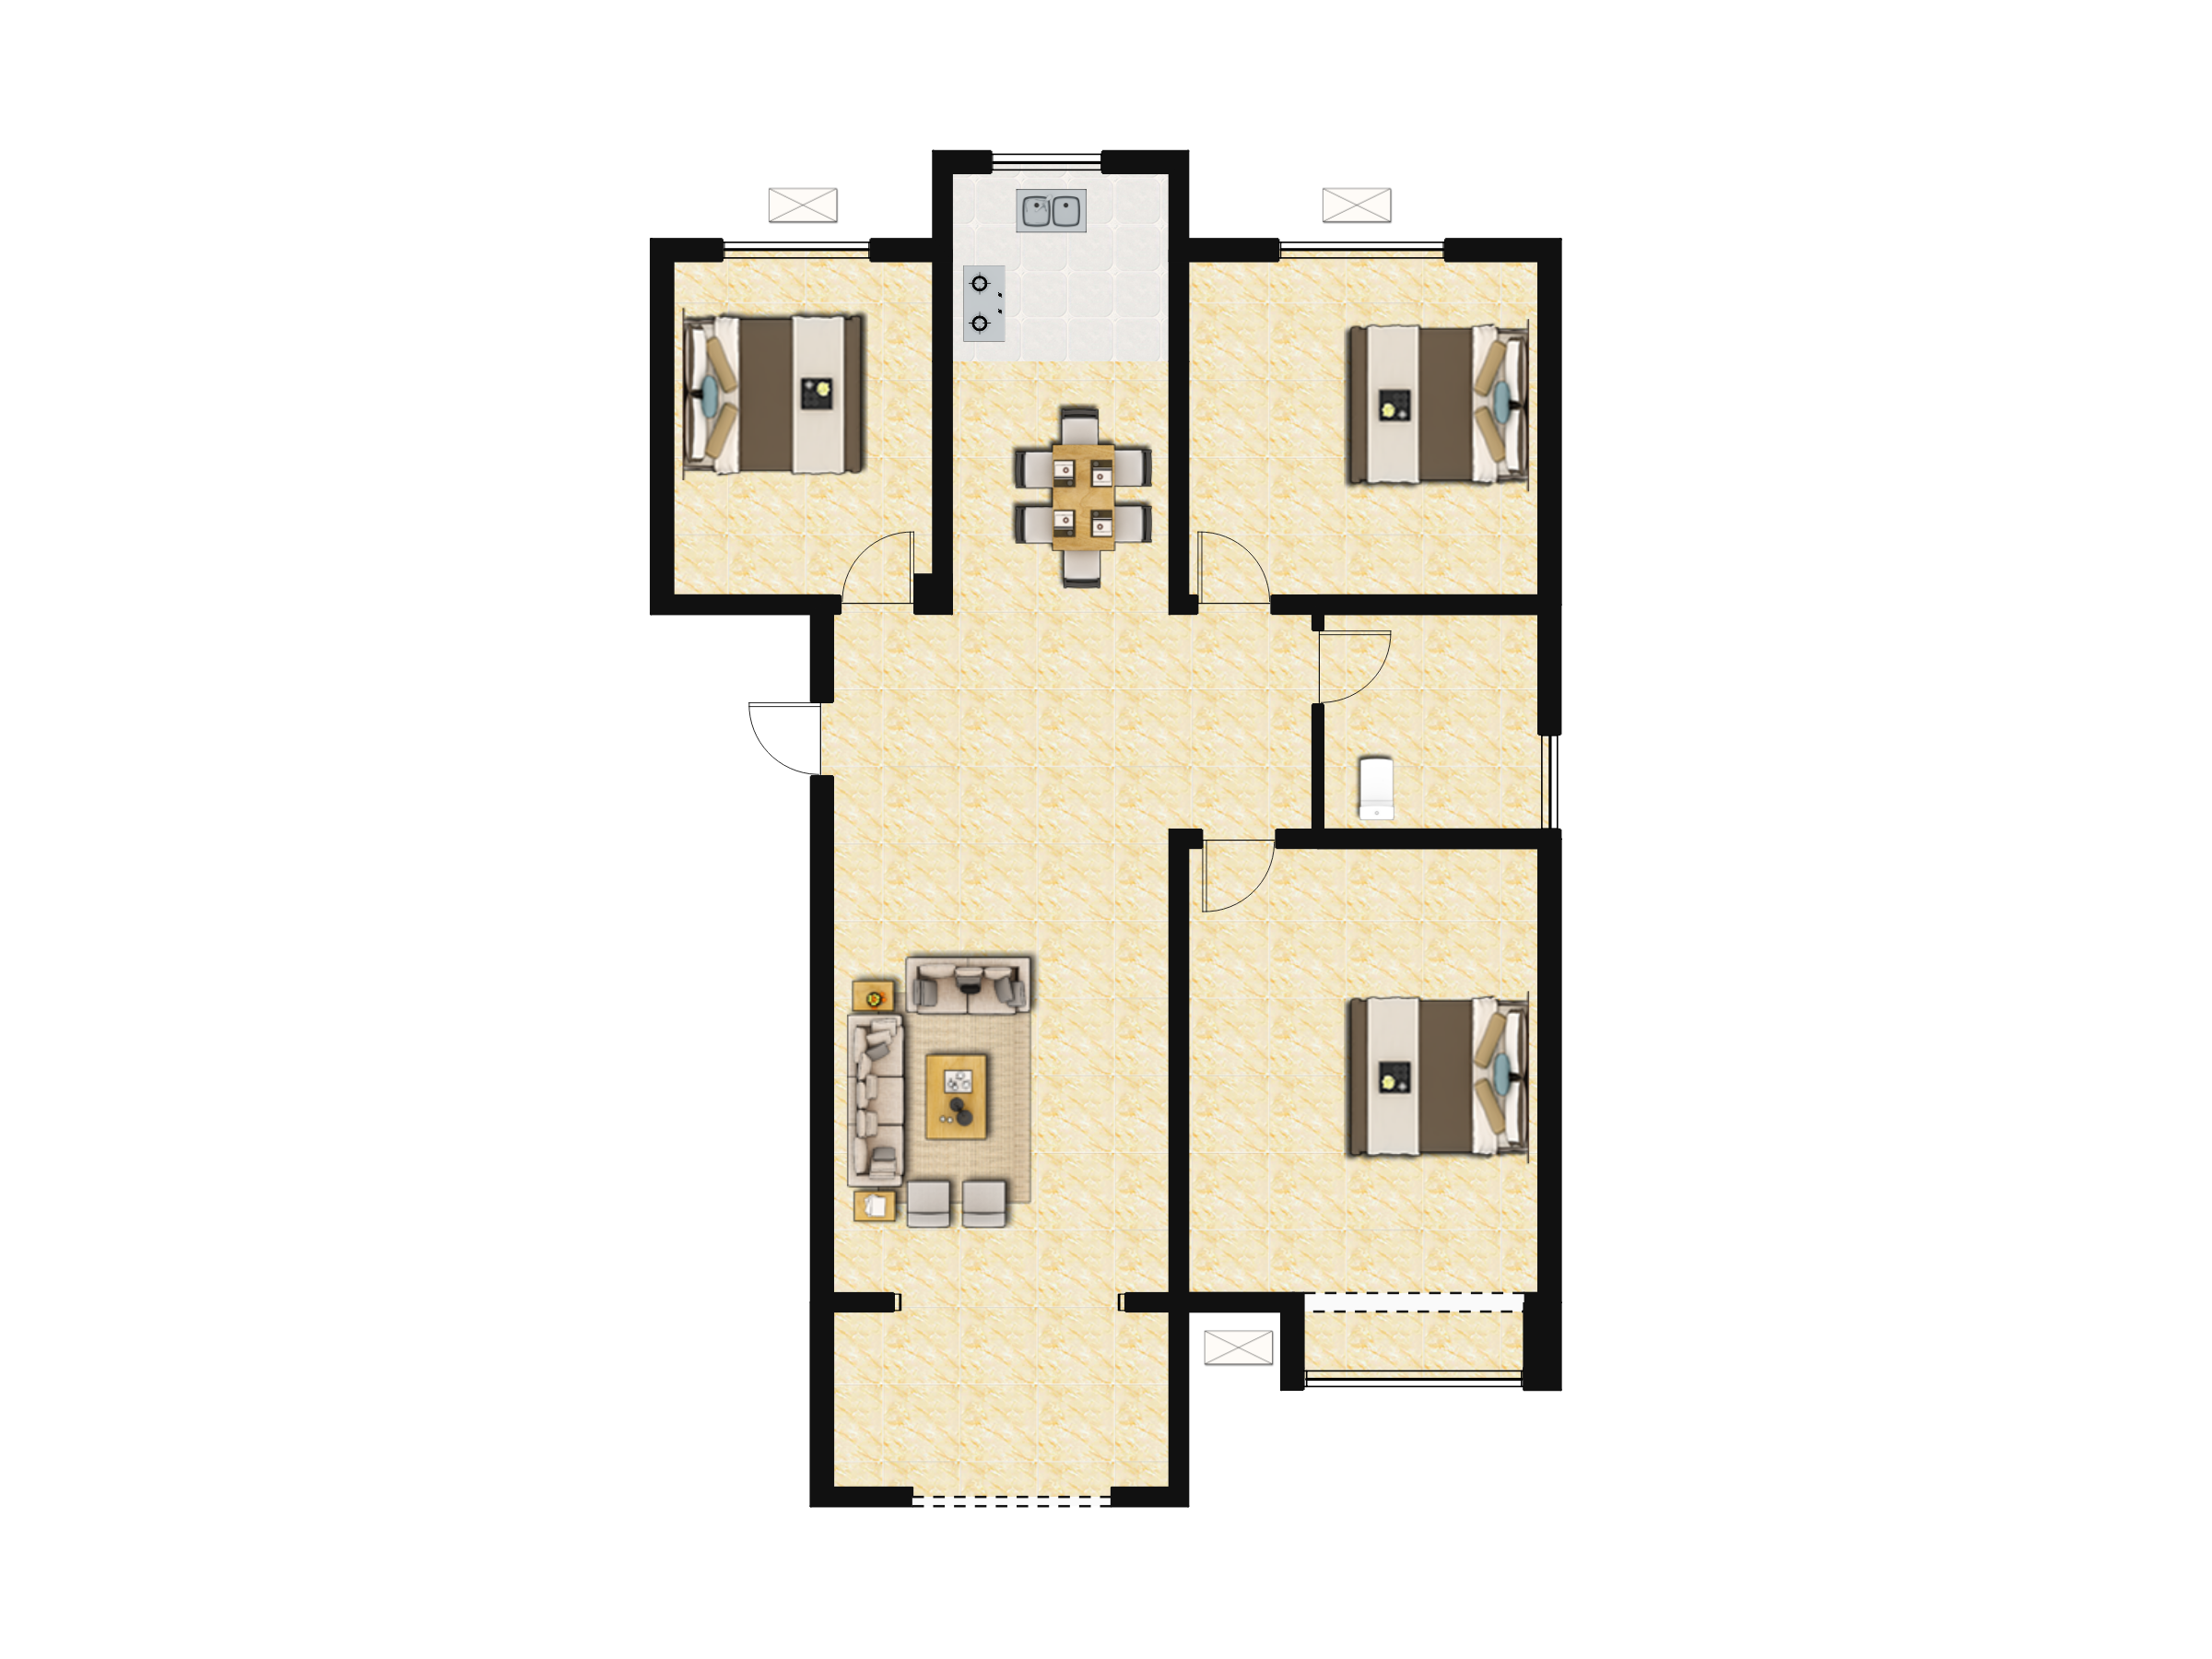 保利云洲花园A-1户型图,4室2厅2卫149.25平米- 成都透明房产网